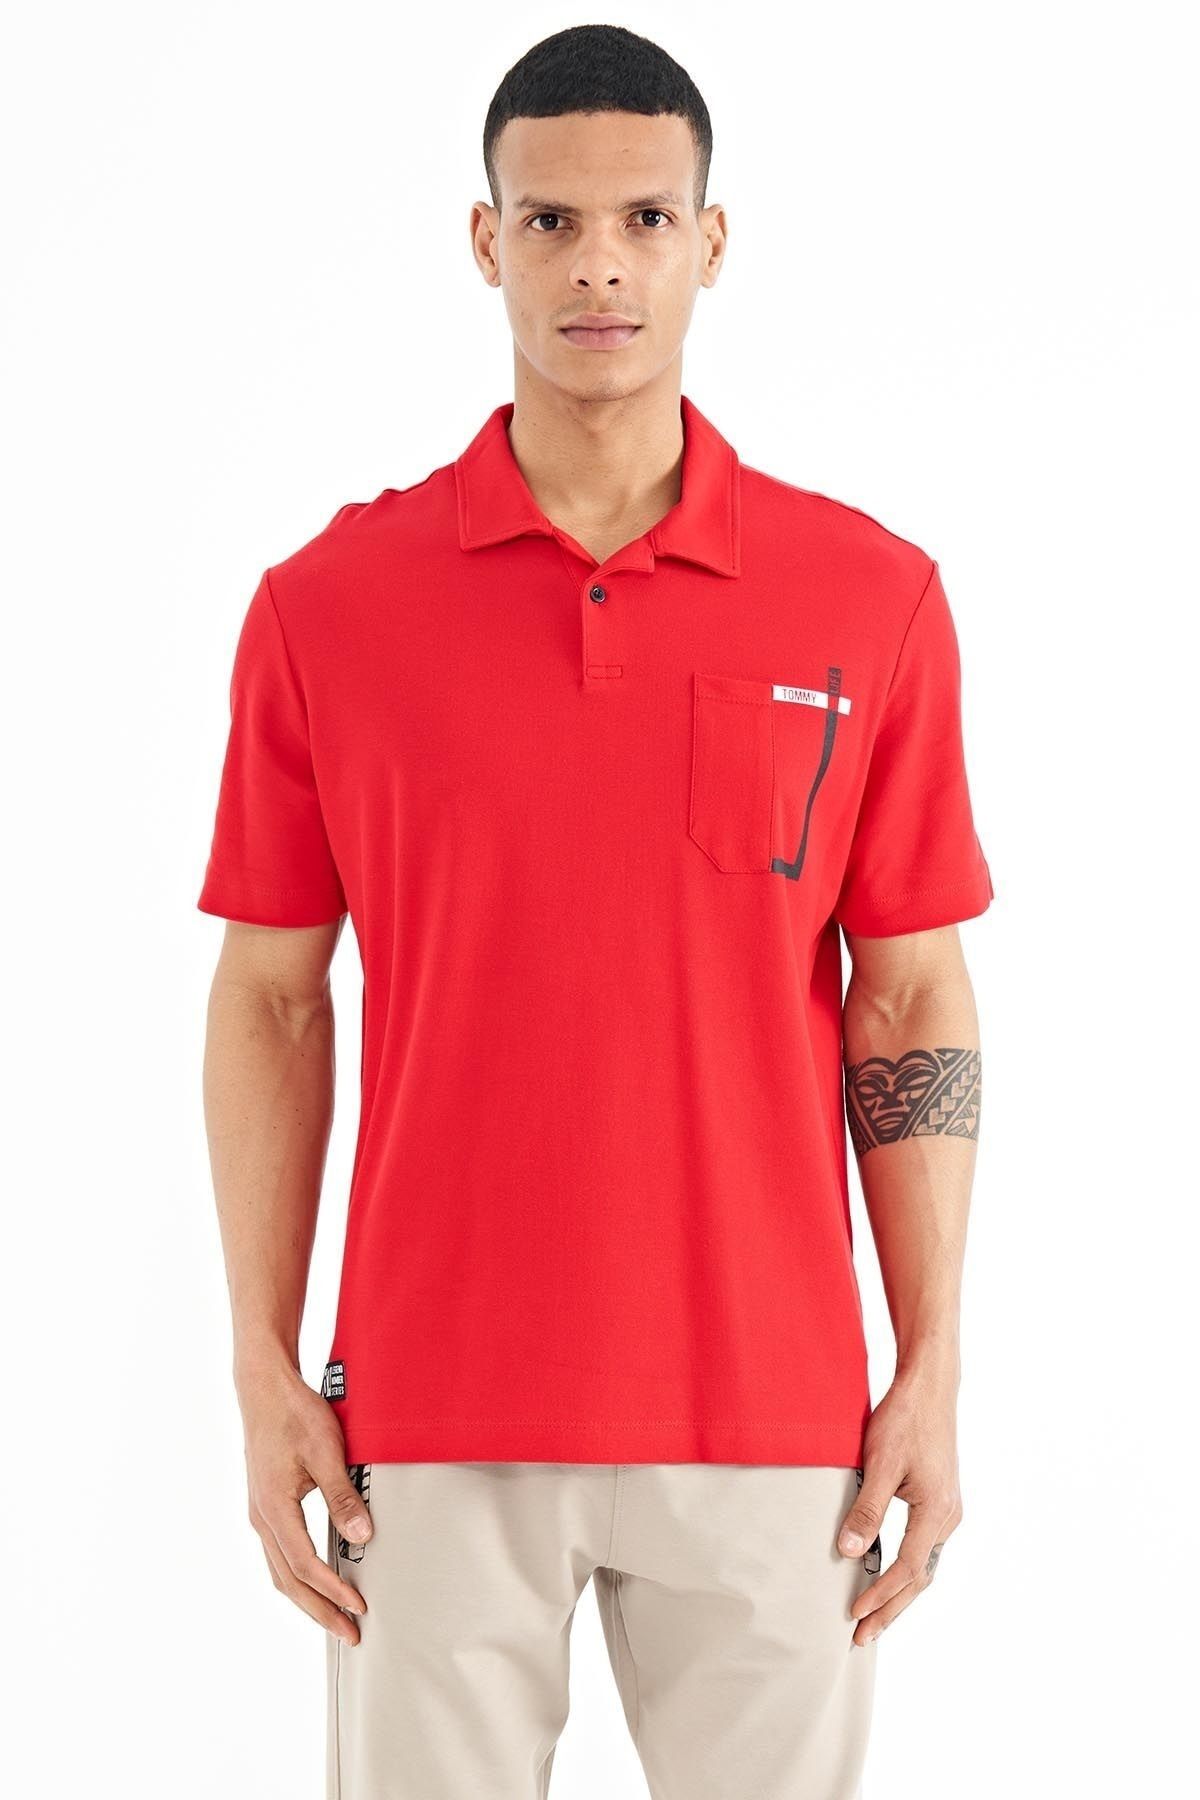 TOMMY LIFE Kırmızı Cep Detaylı Baskılı Standart Kalıp Polo Yaka Erkek T-shirt - 88241